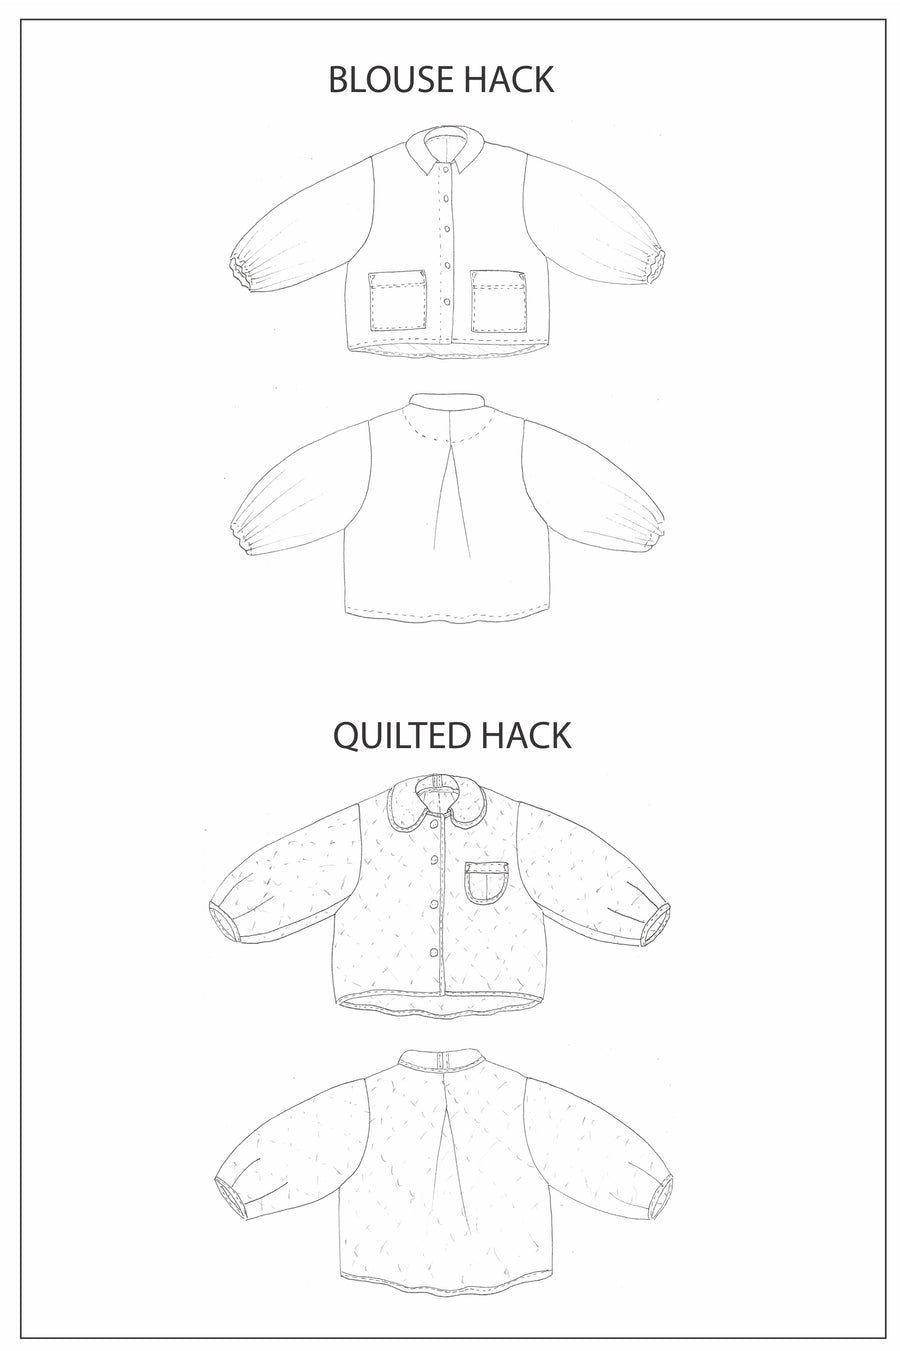 ZW Bell Jacket - PDF Pattern